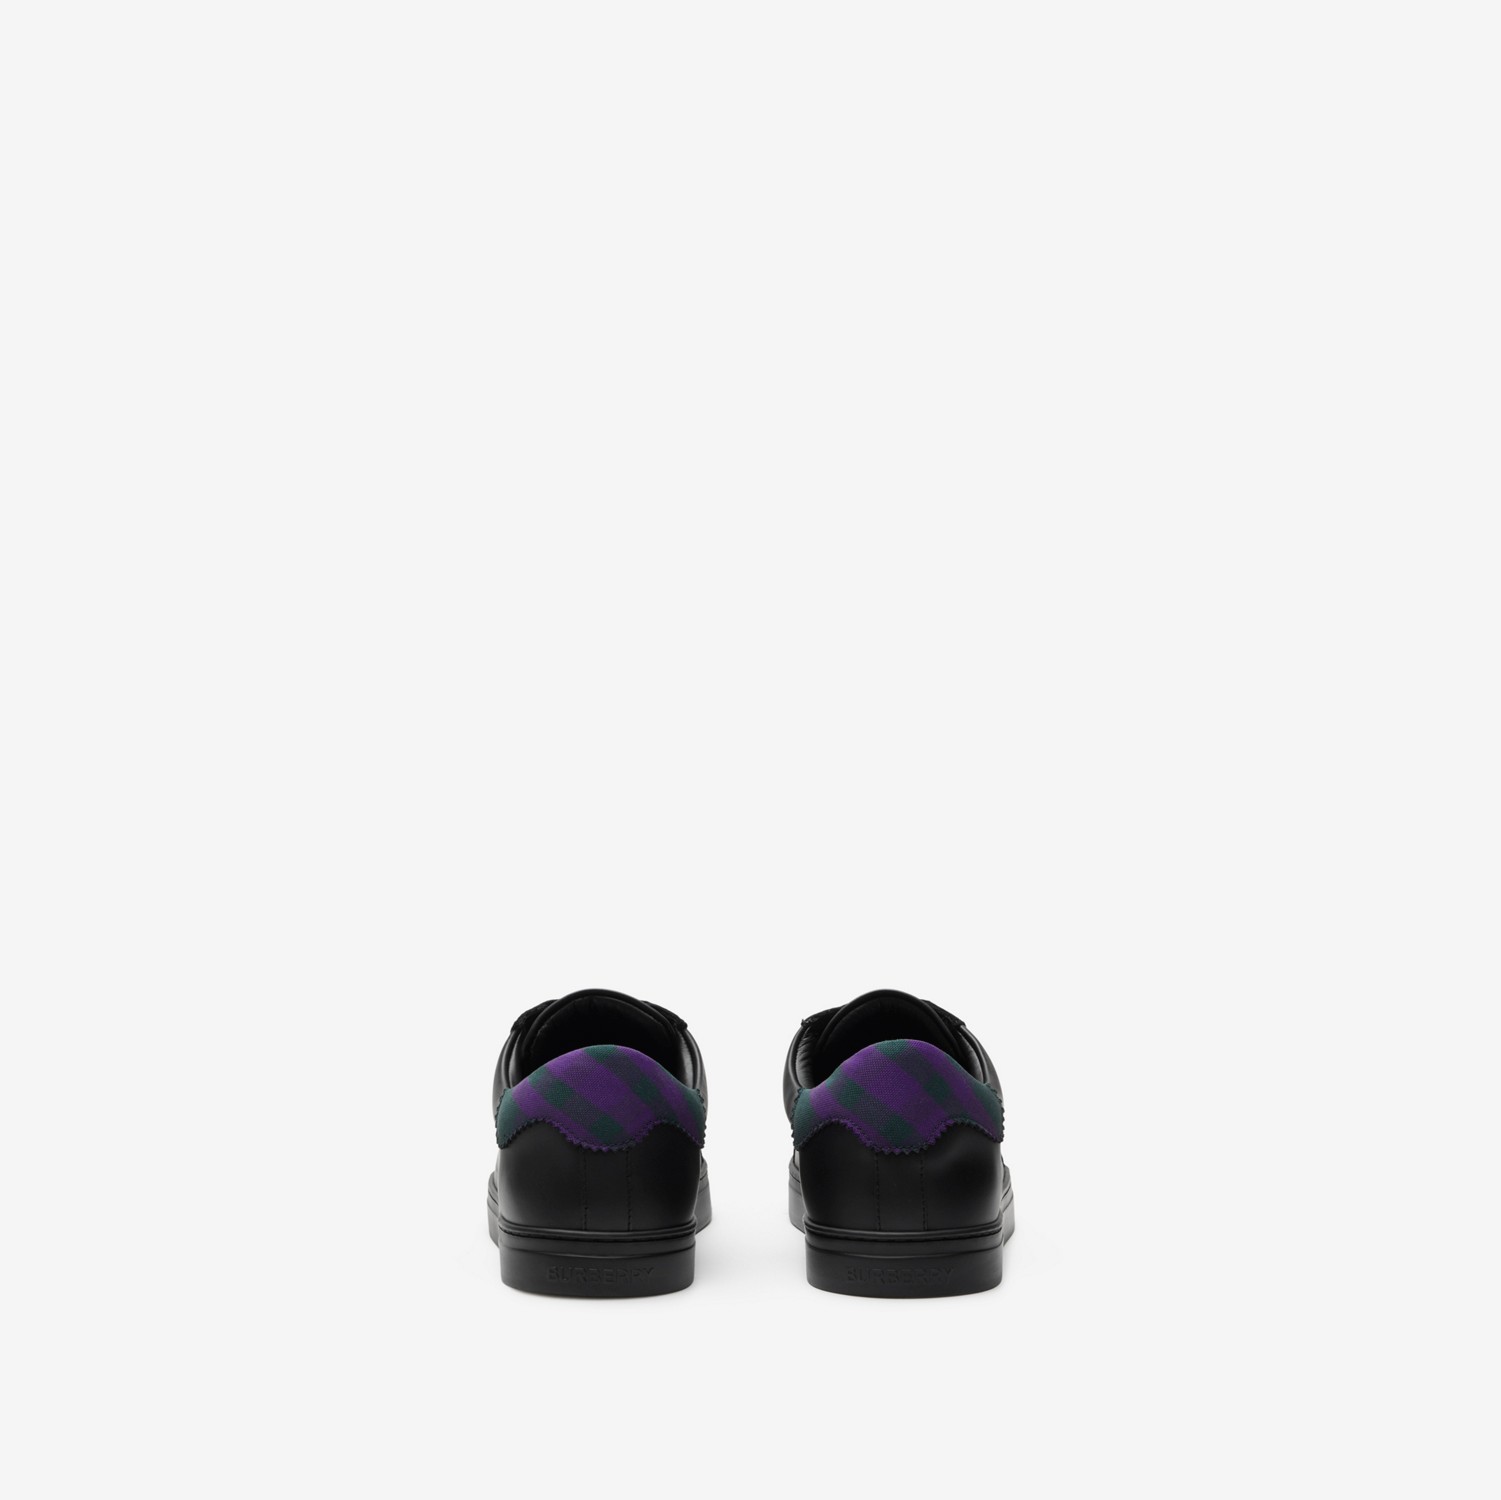 皮革拼格纹棉质运动鞋 (黑色 / 皇室紫) - 男士 | Burberry® 博柏利官网